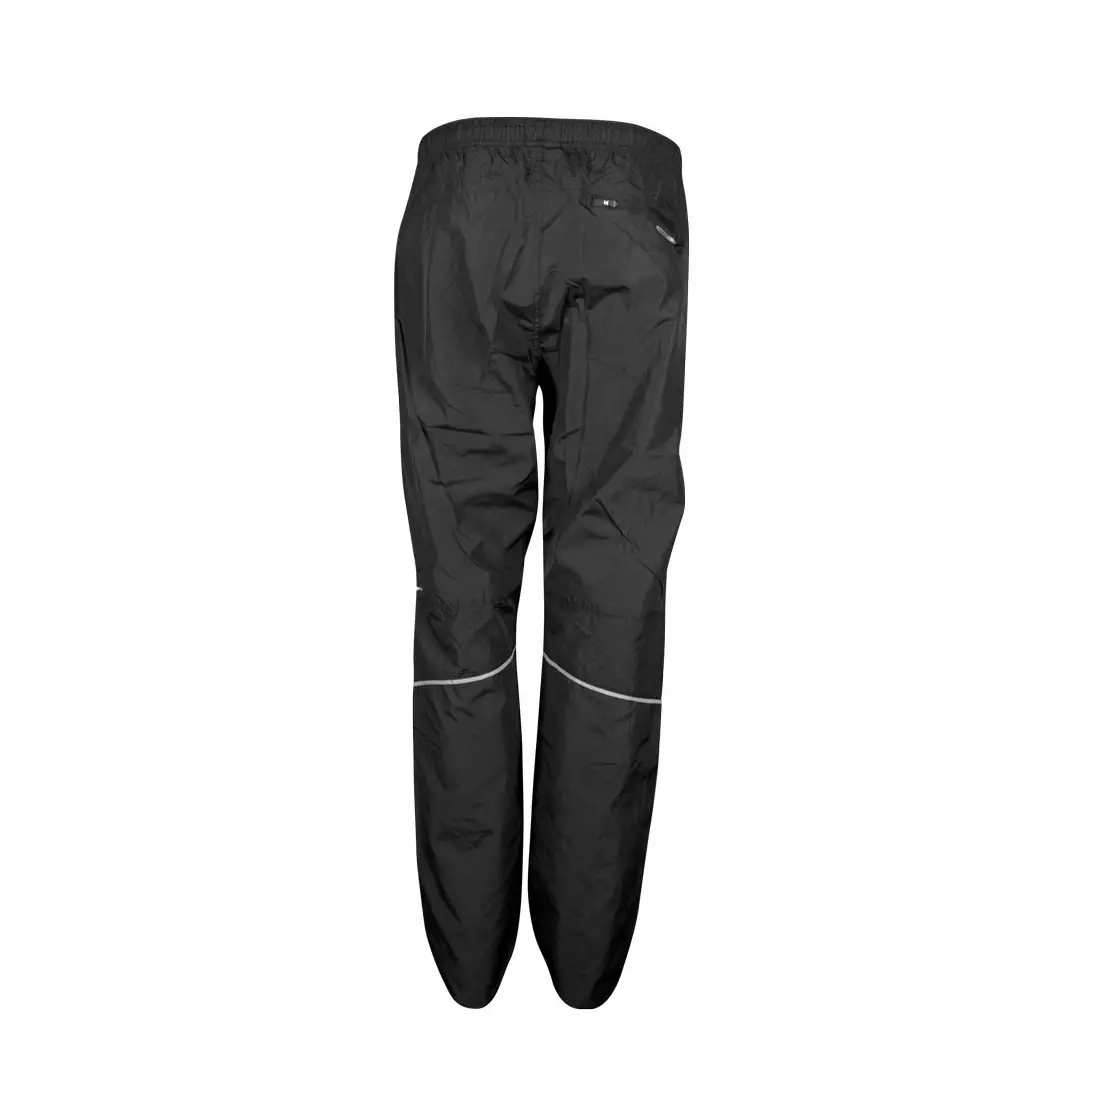 NEWLINE BASE PANTS - ľahké pánske bežecké nohavice - 14282-060